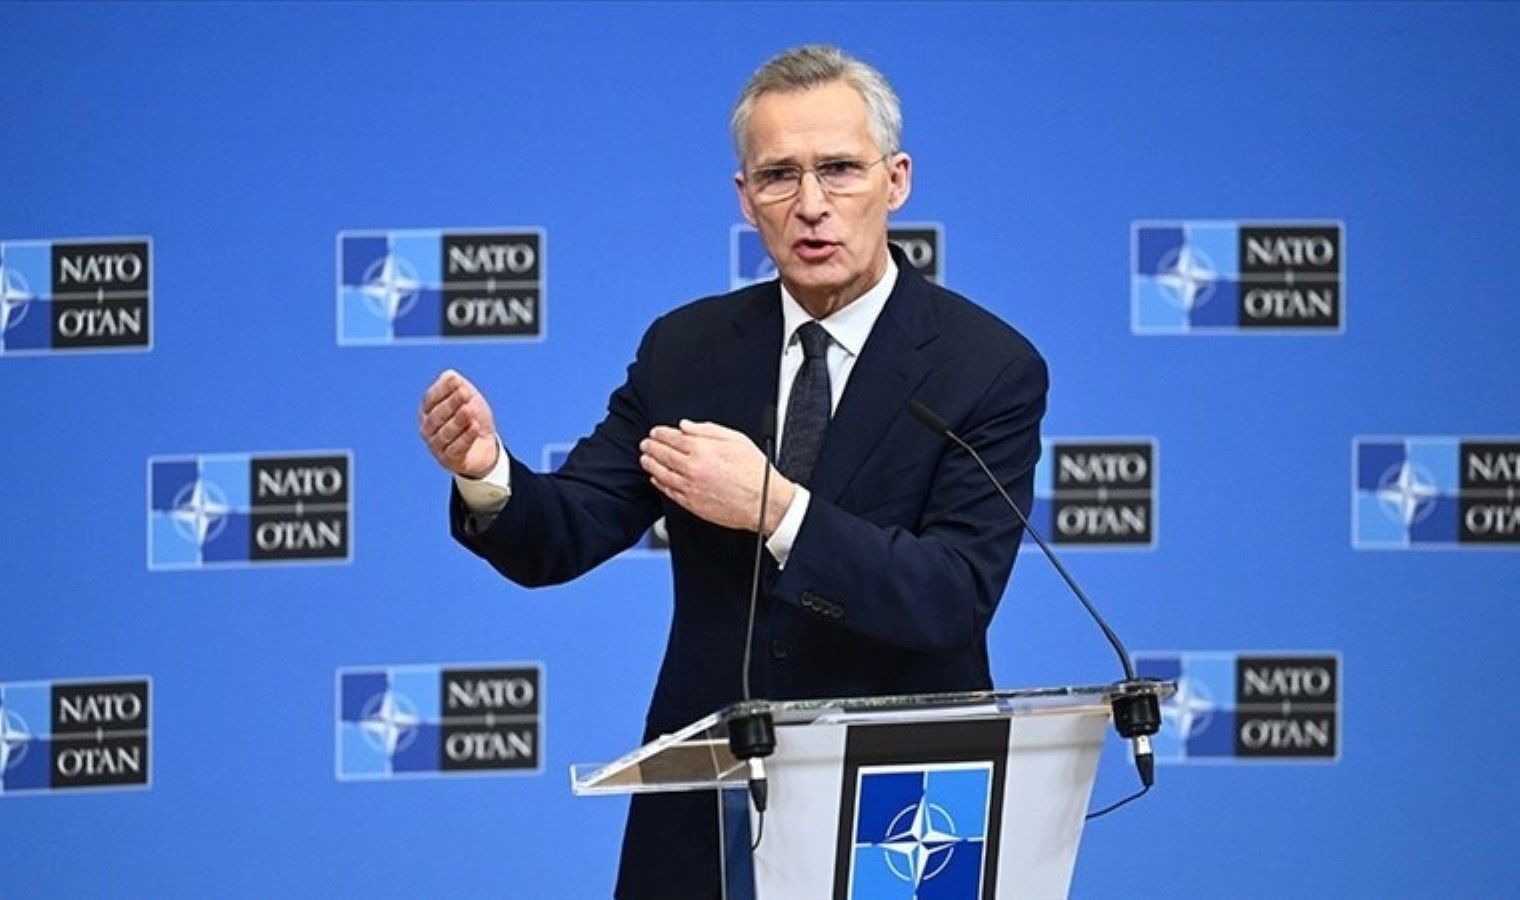 NATO’dan Çin çıkışı: Avrupa’daki en büyük silahlı çatışmayı körüklüyor